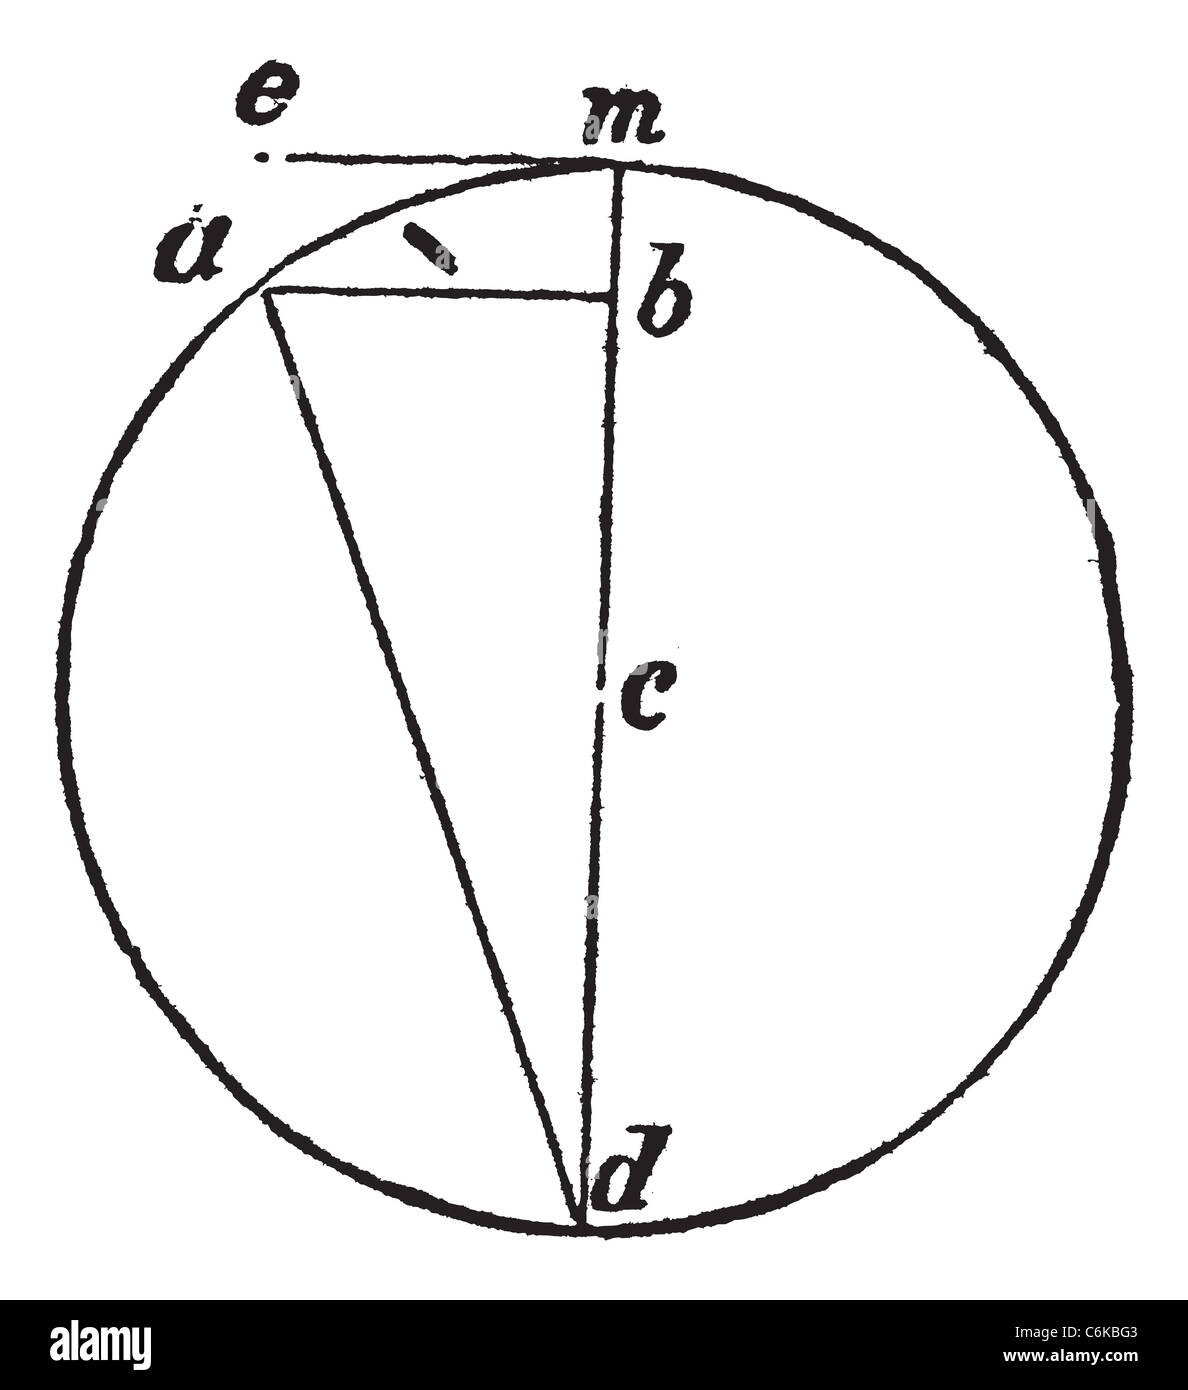 La force centrifuge vintage la gravure. Ancien gravé illustration d'un schéma mathématique. Banque D'Images